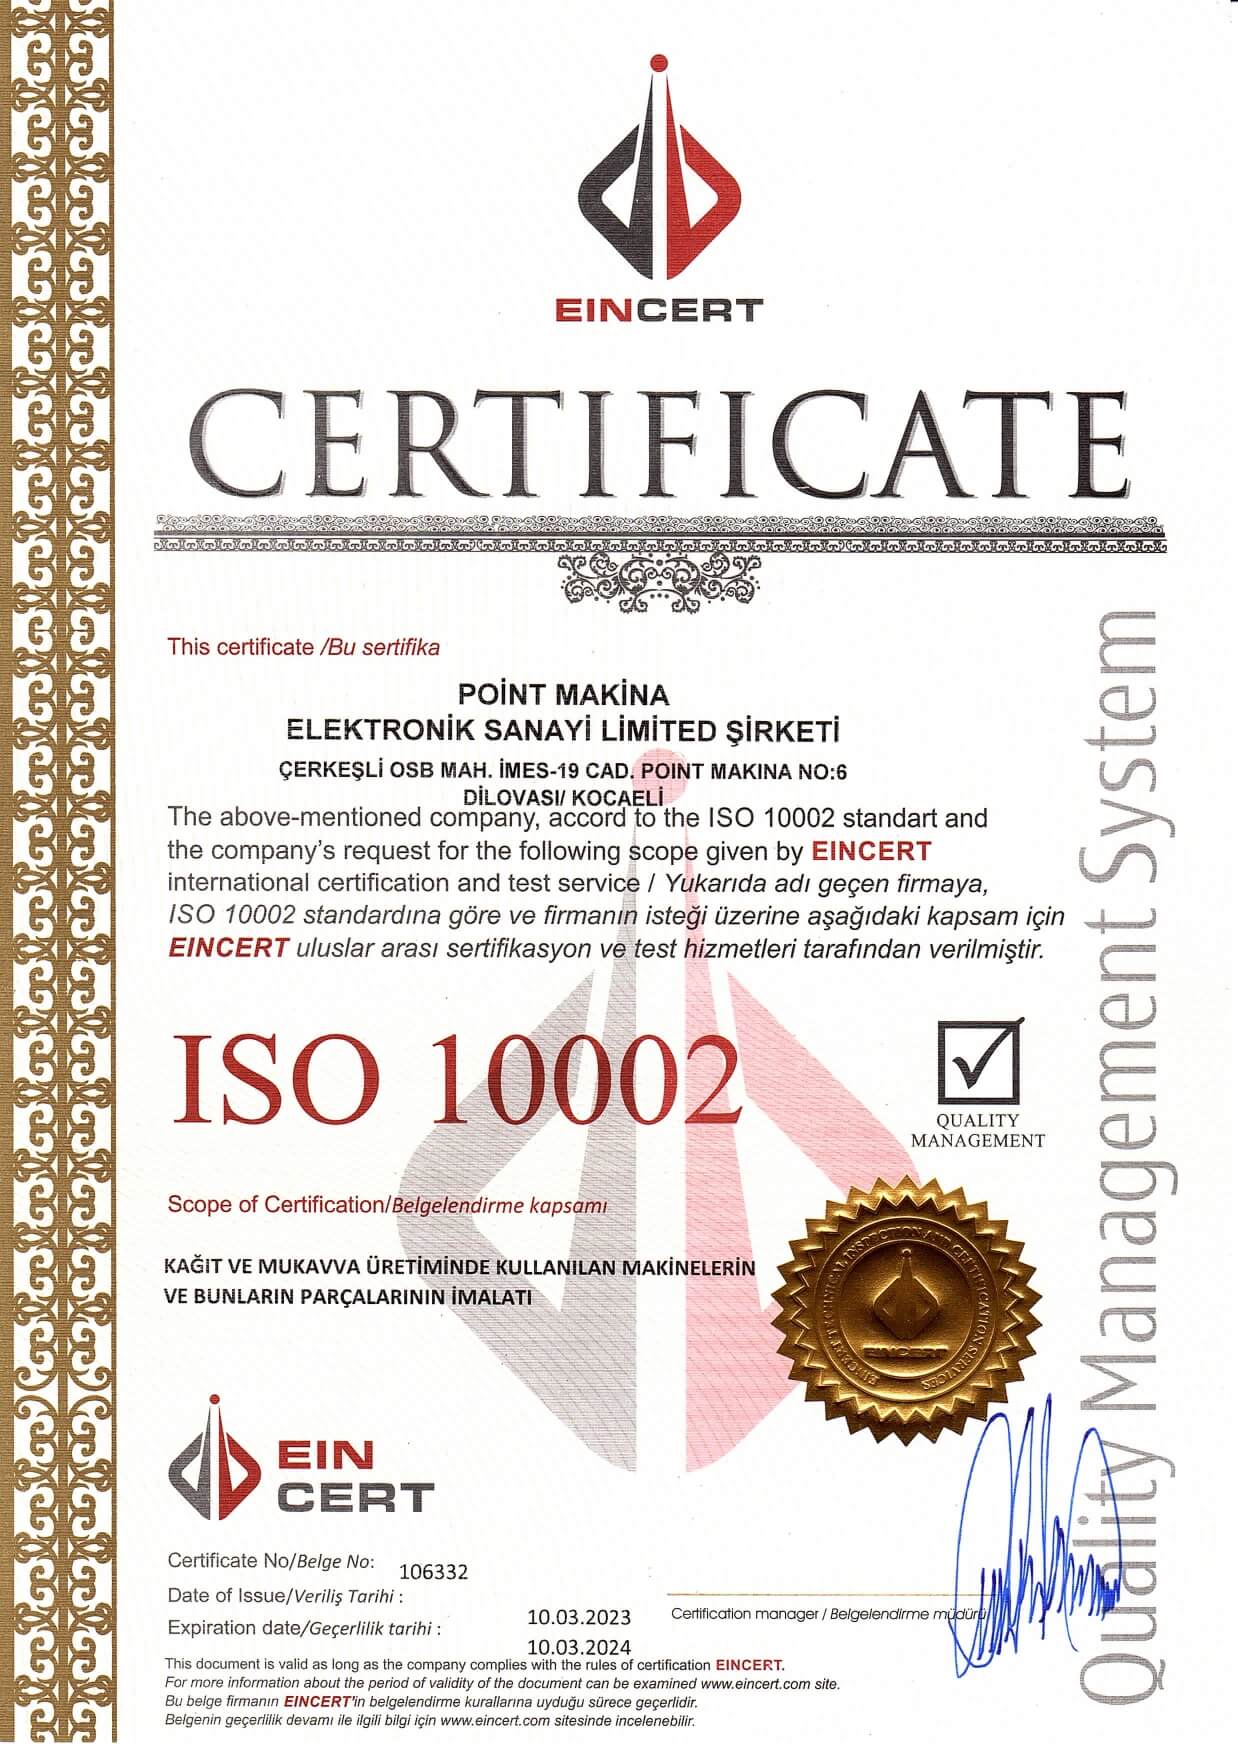 iso-sertifika (1)_page-0001 (1)